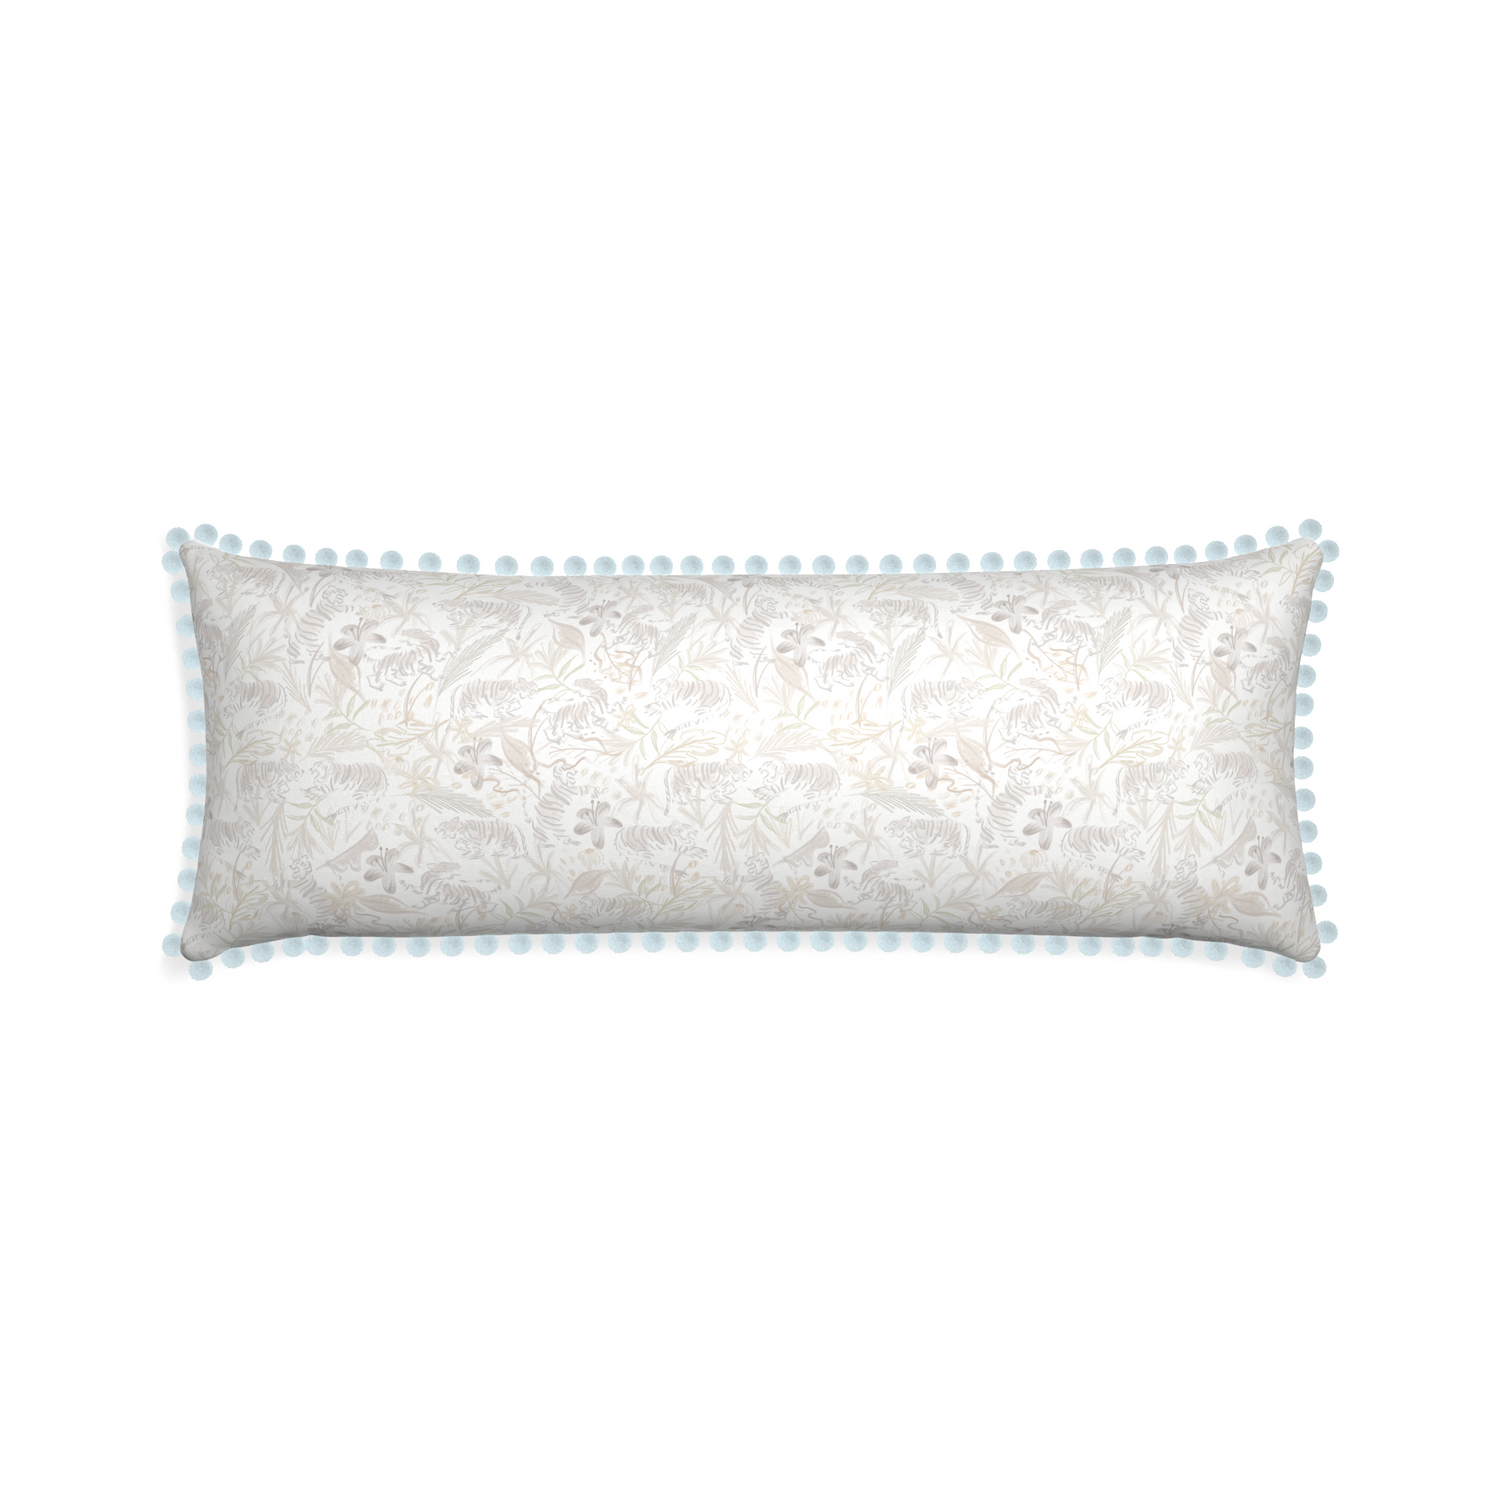 Xl-lumbar frida sand custom pillow with powder pom pom on white background